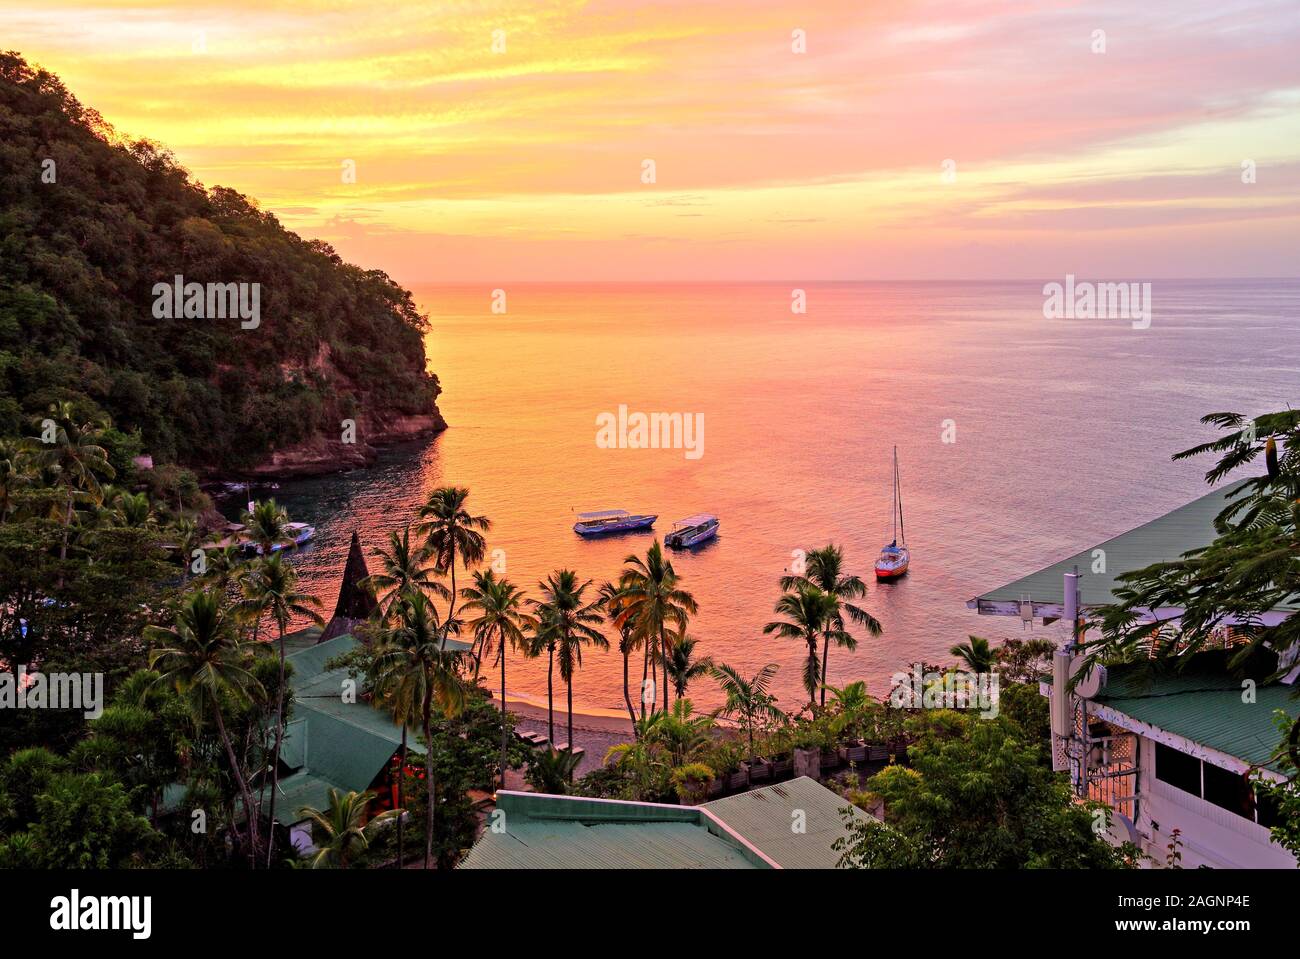 Bucht mit Palmen Strand von Anse Chastenet Hotel bei Sonnenuntergang, Soufriere, St. Lucia, Kleine Antillen, Karibik, Karibische Inseln Stockfoto